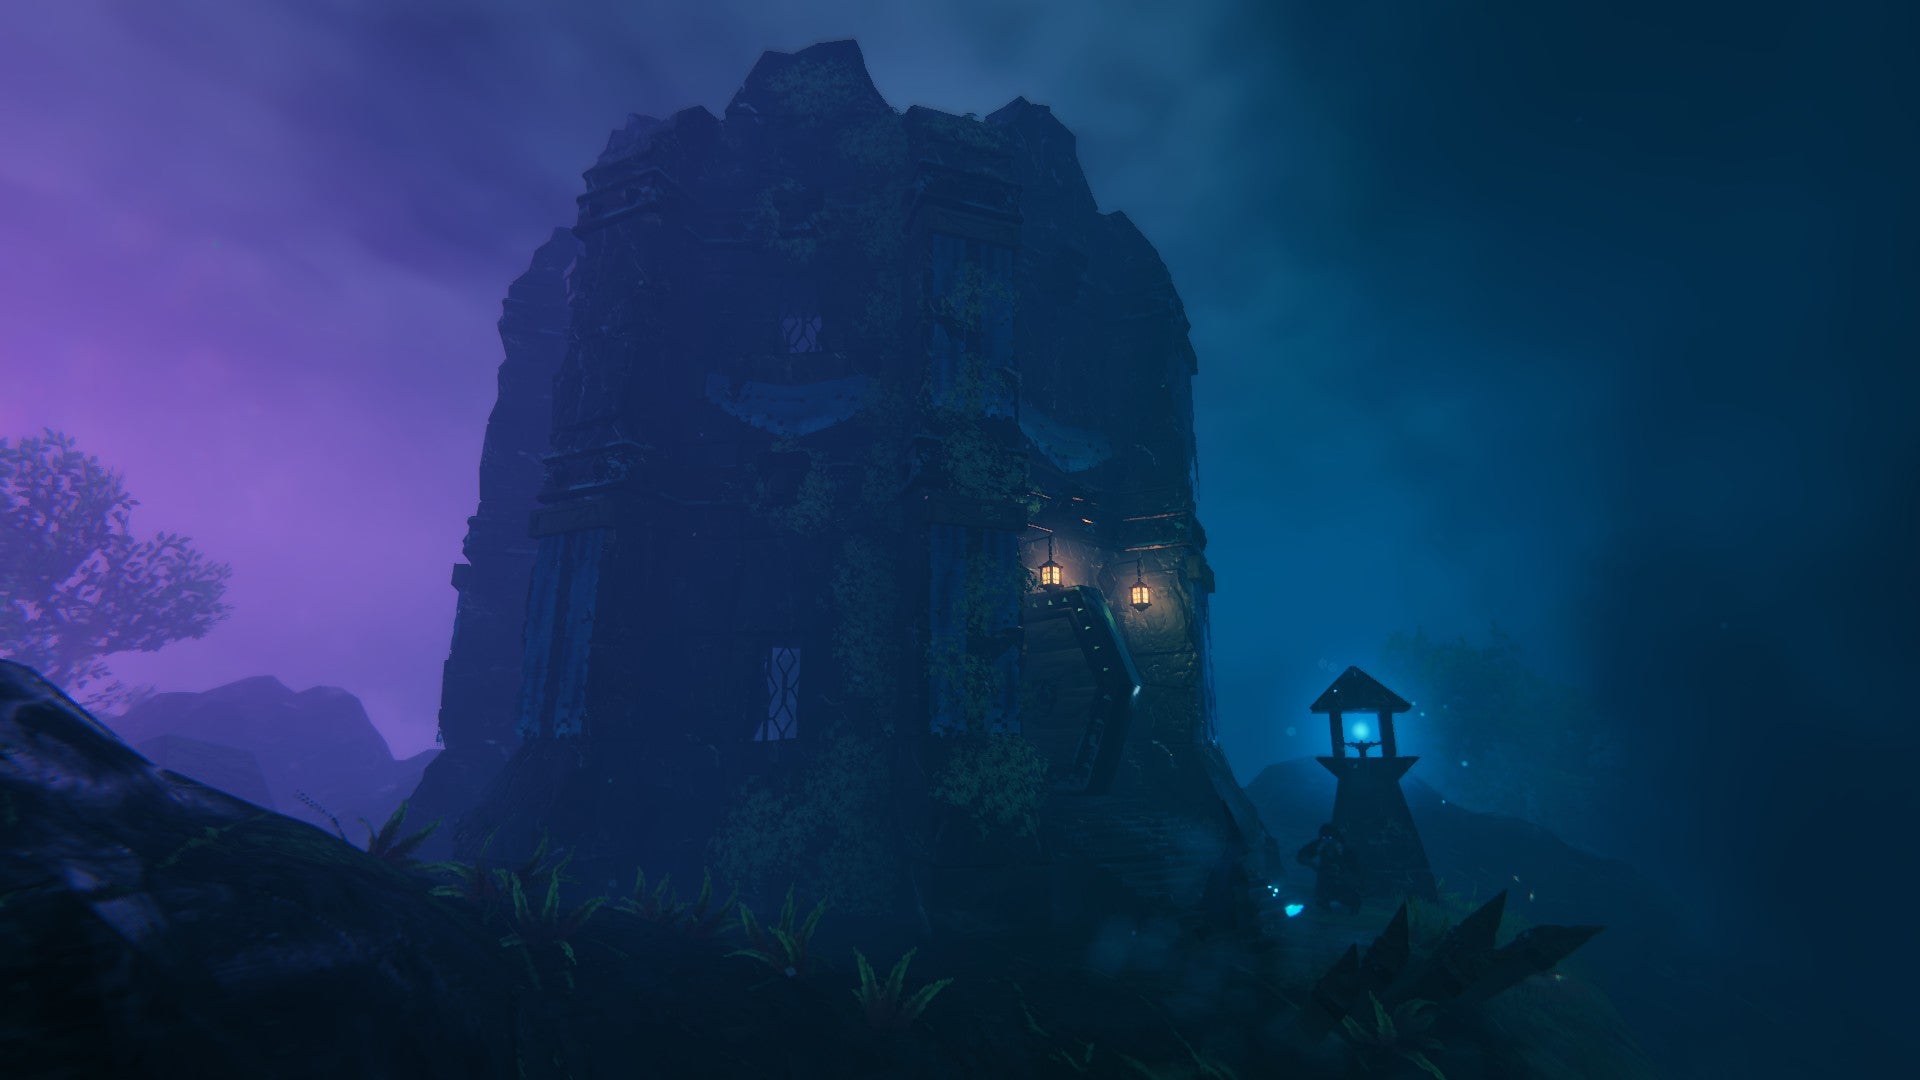 Valheim Mistlands update - a large rocky structure in dark purple and blue haze